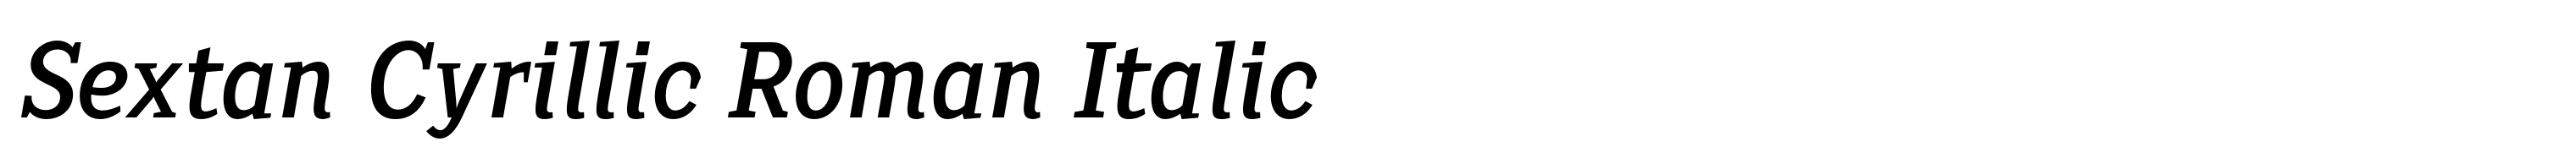 Sextan Cyrillic Roman Italic